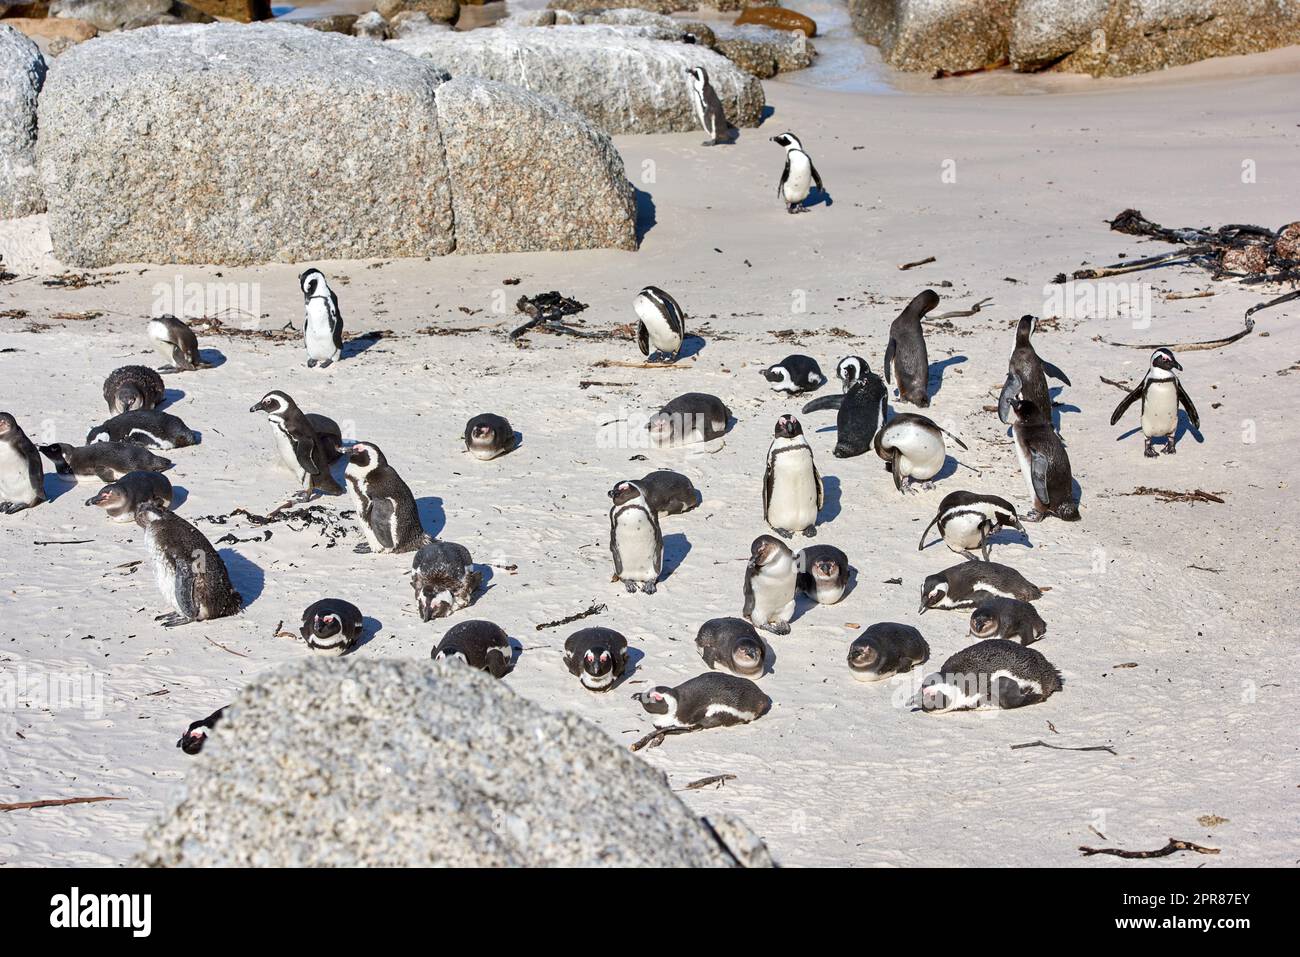 Gruppe von Pinguinen, die sich in der Nähe von Felsen sonnen. Flugunfähige Vögel in ihrem natürlichen Lebensraum. Kolonie gefährdeter Schwarzfußarten oder Kap-Pinguine am Sandy Boulders Beach in Kapstadt, Südafrika Stockfoto